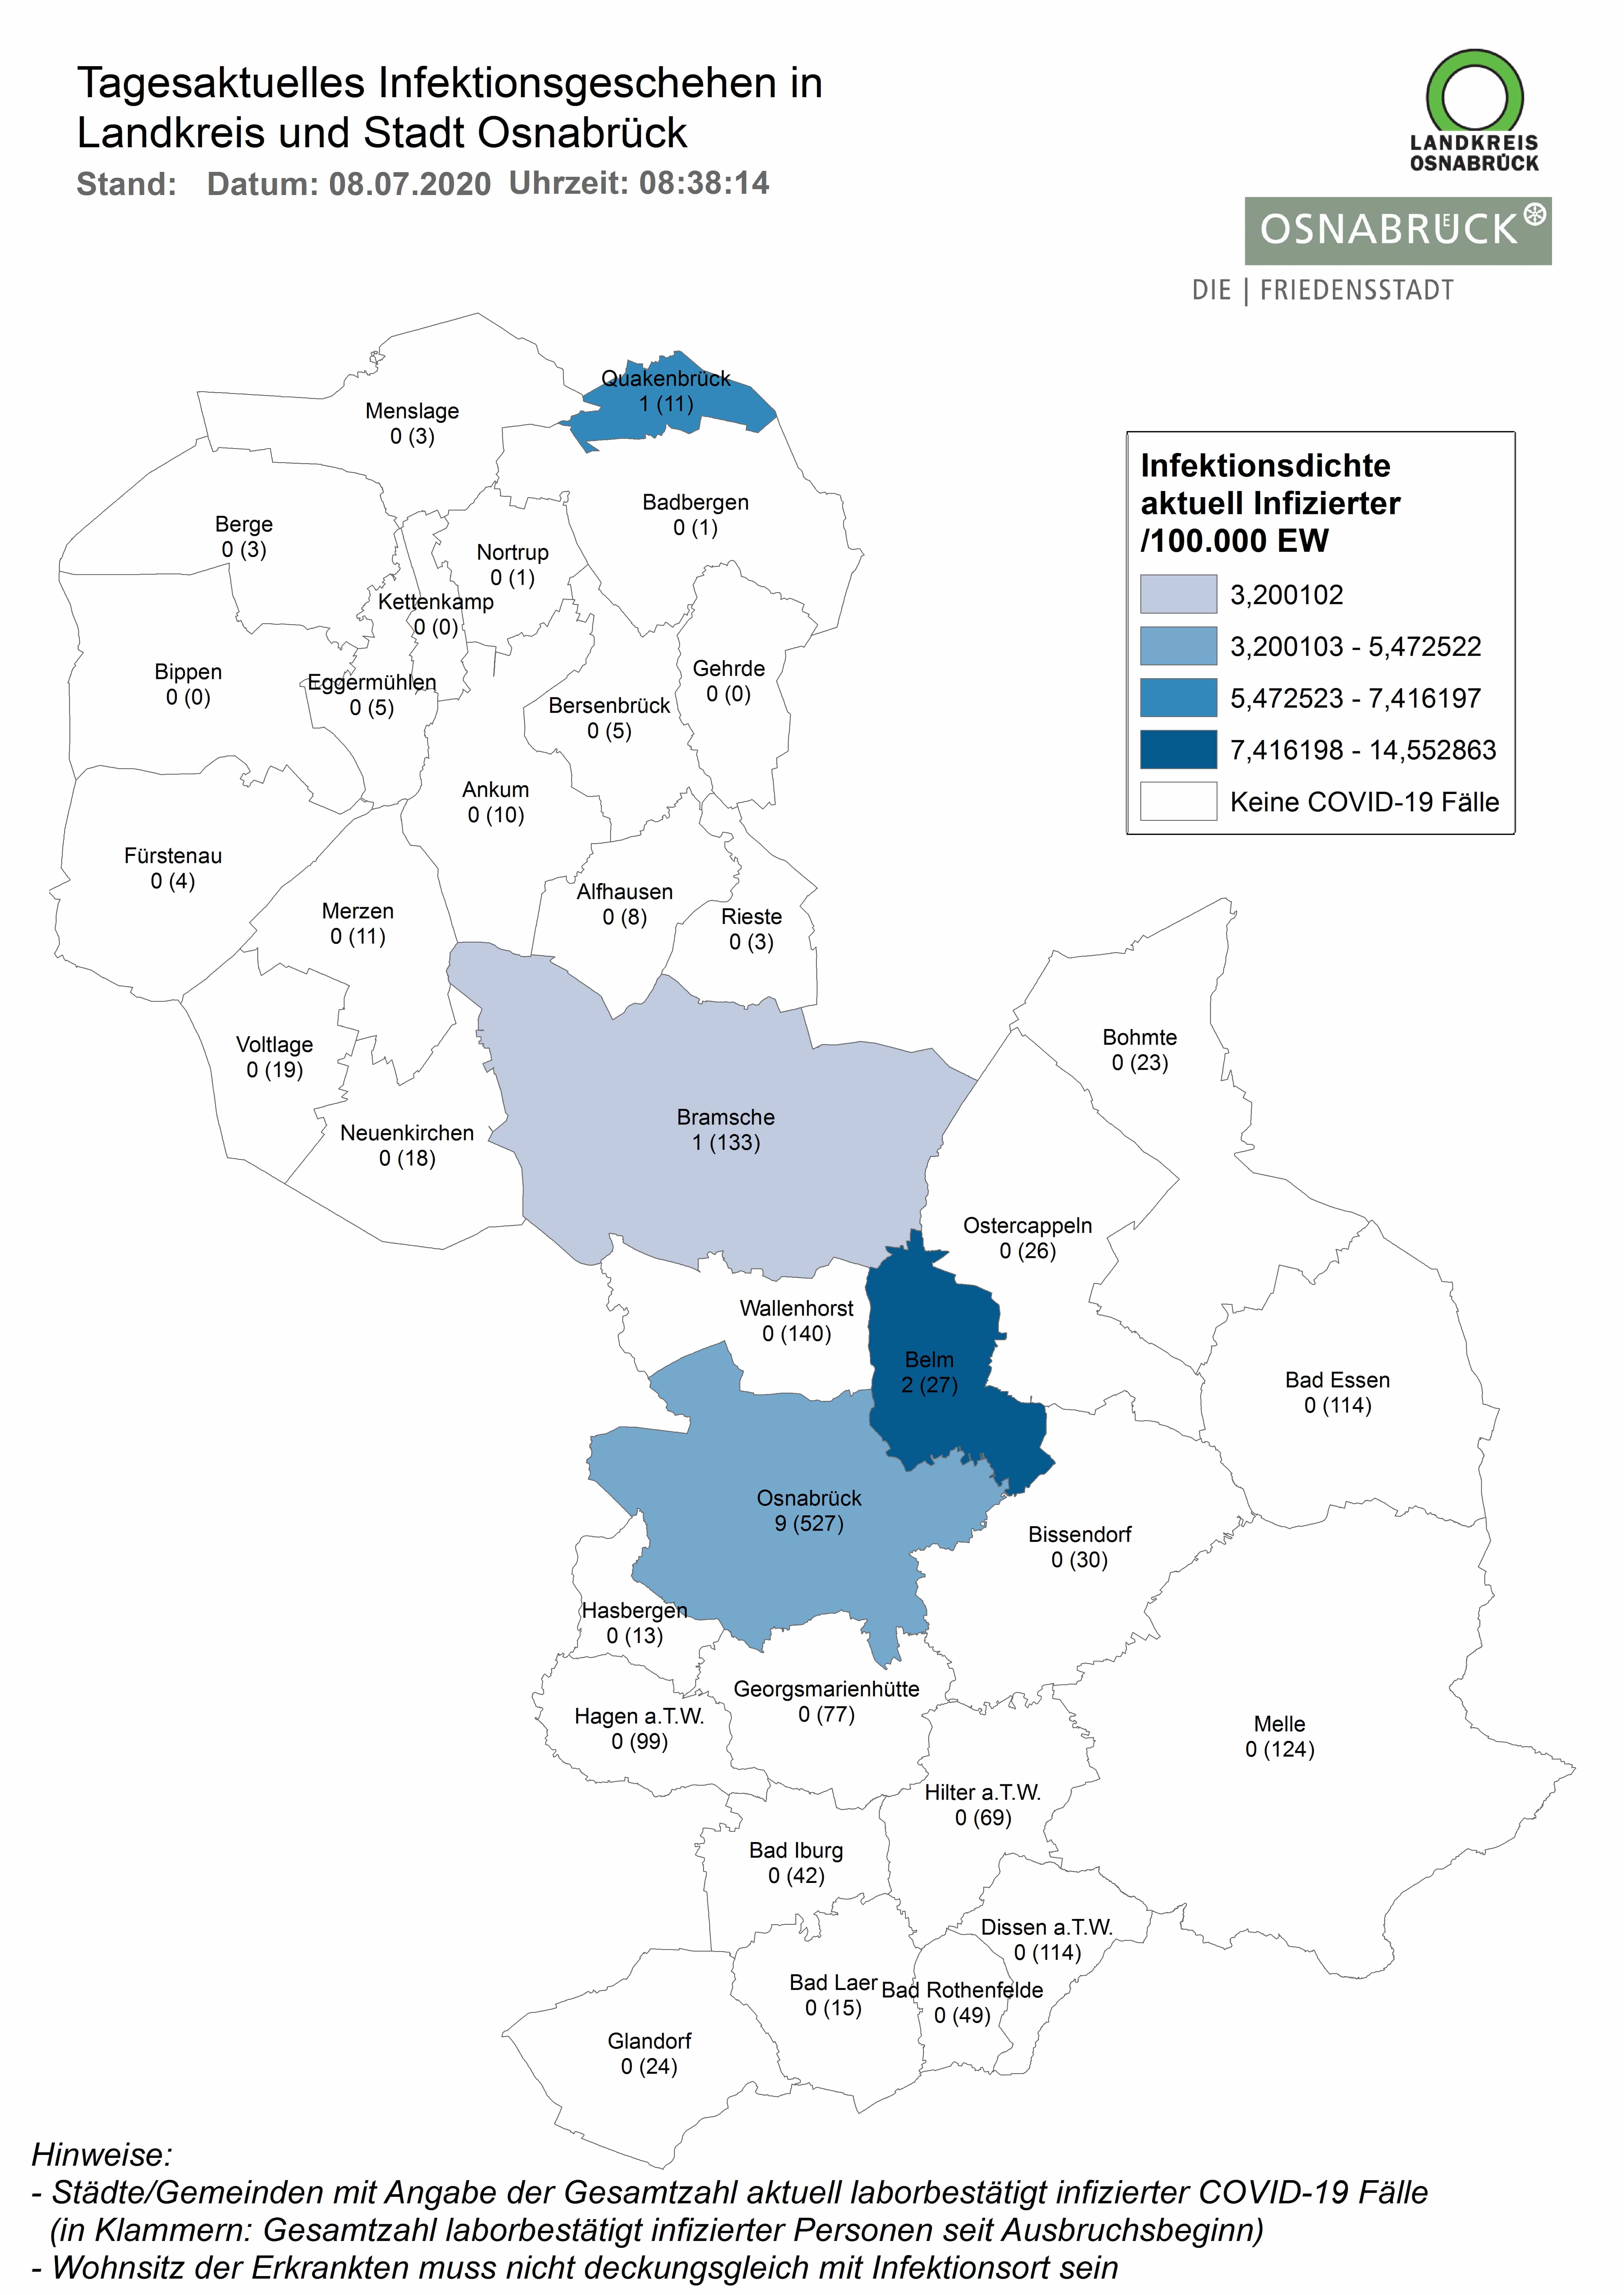 Südkreis in der Region Osnabrück frei von laborbestätigten Corona-Infektionen